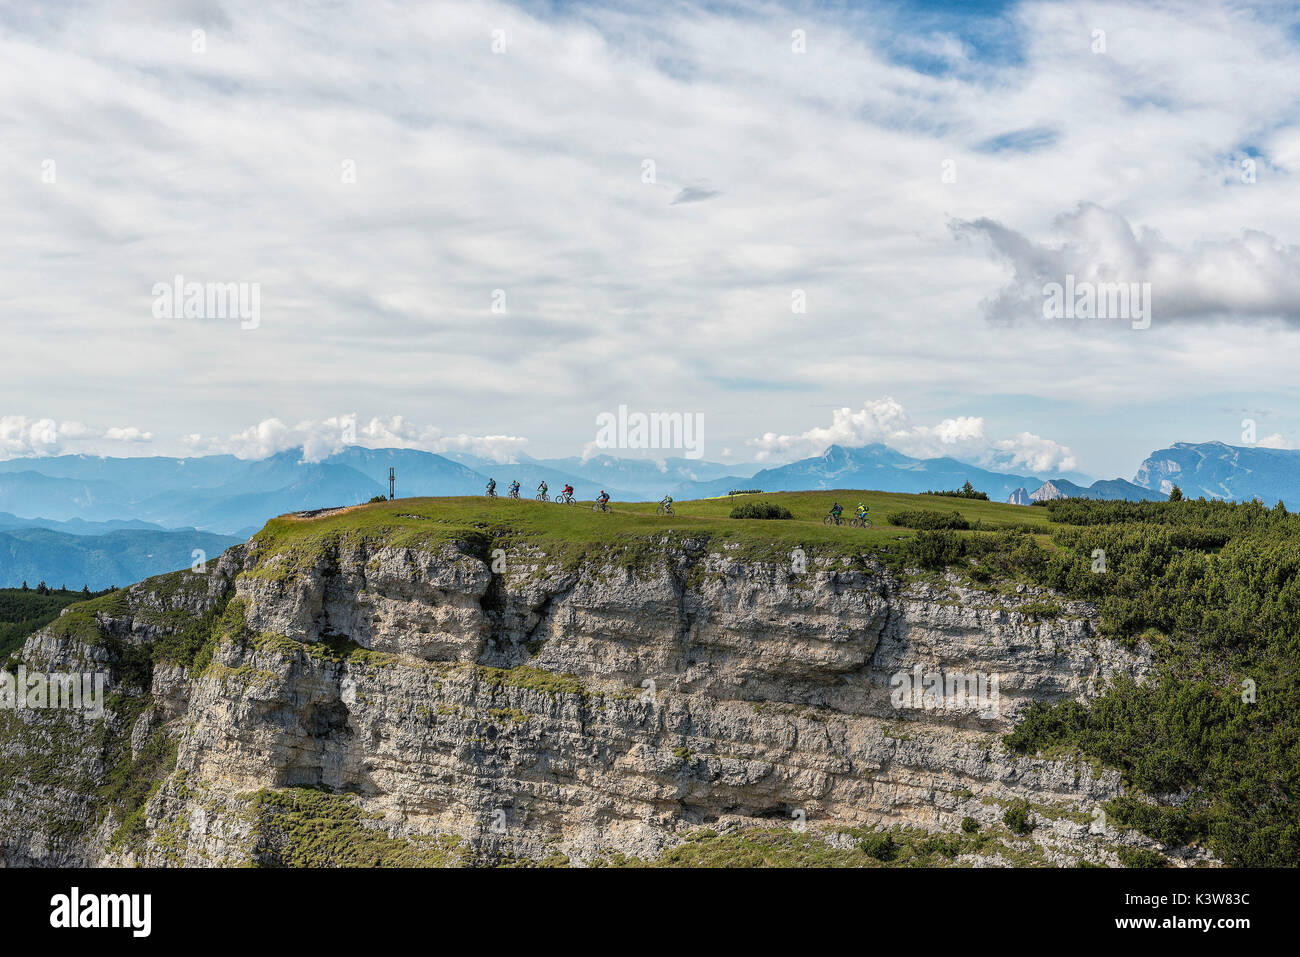 Bikers on top of Roen Mount, Val di Non, Trentino Alto Adige, Italia Stock Photo